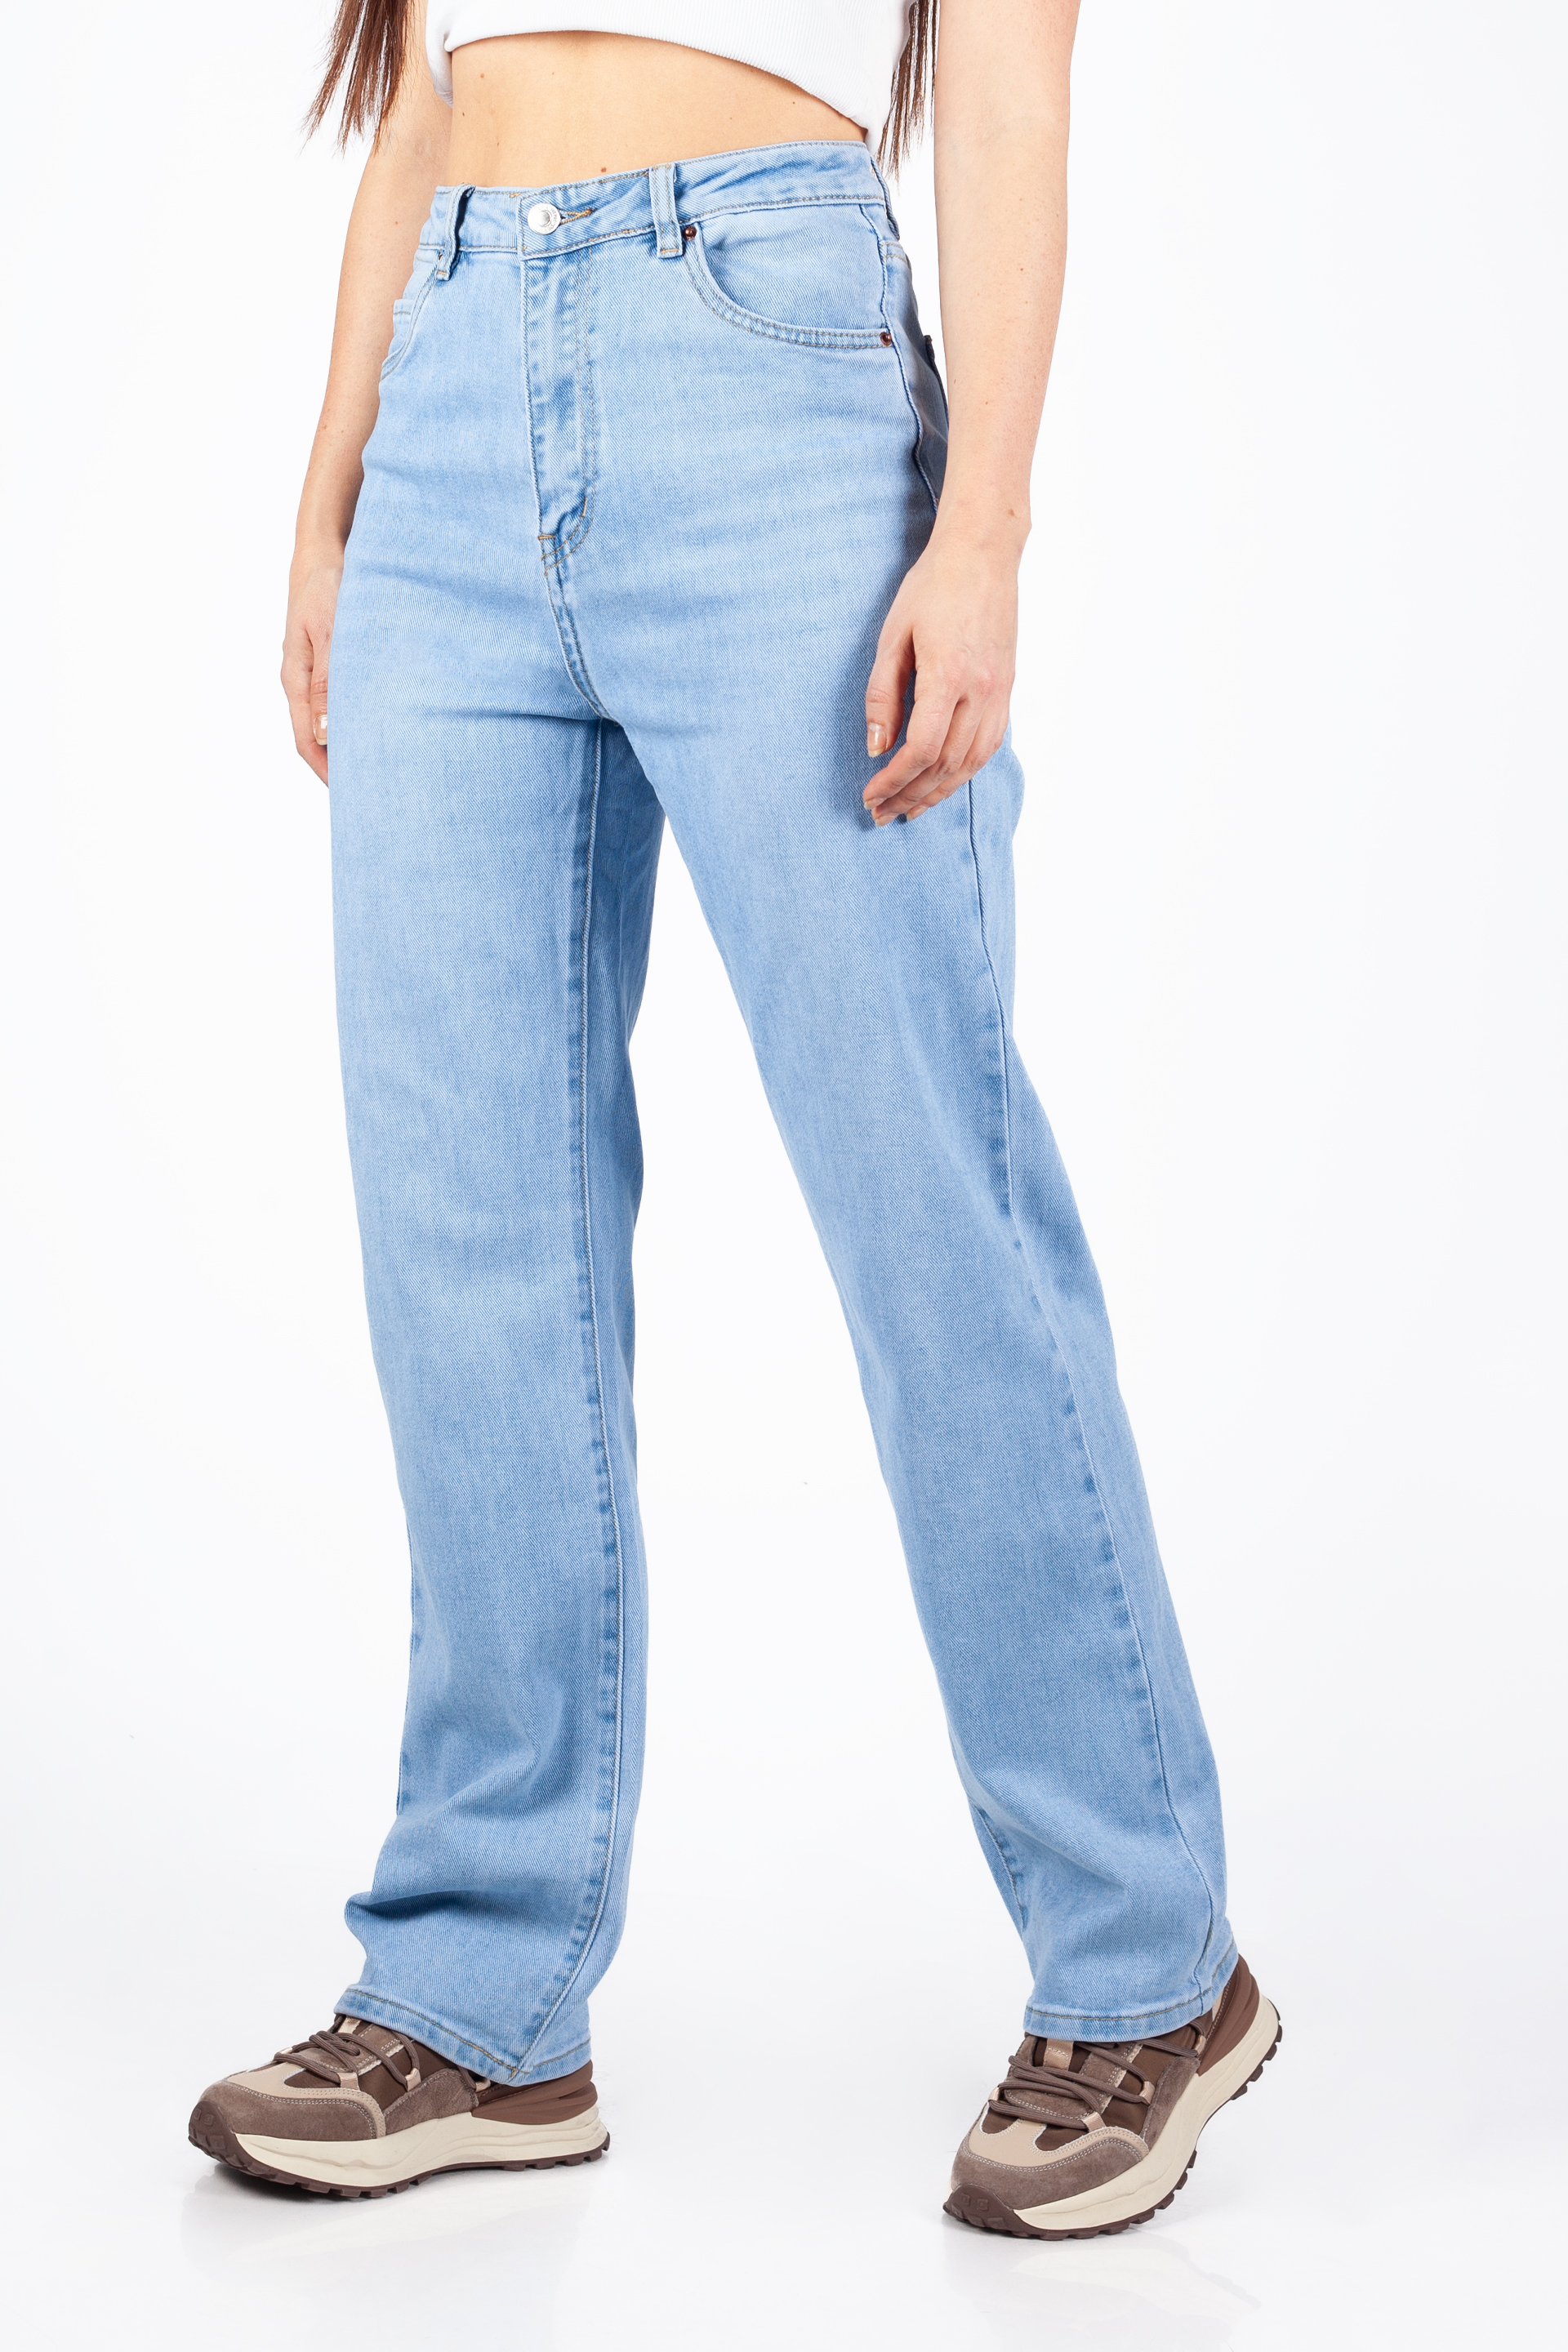 Jeans VS MISS VS7911